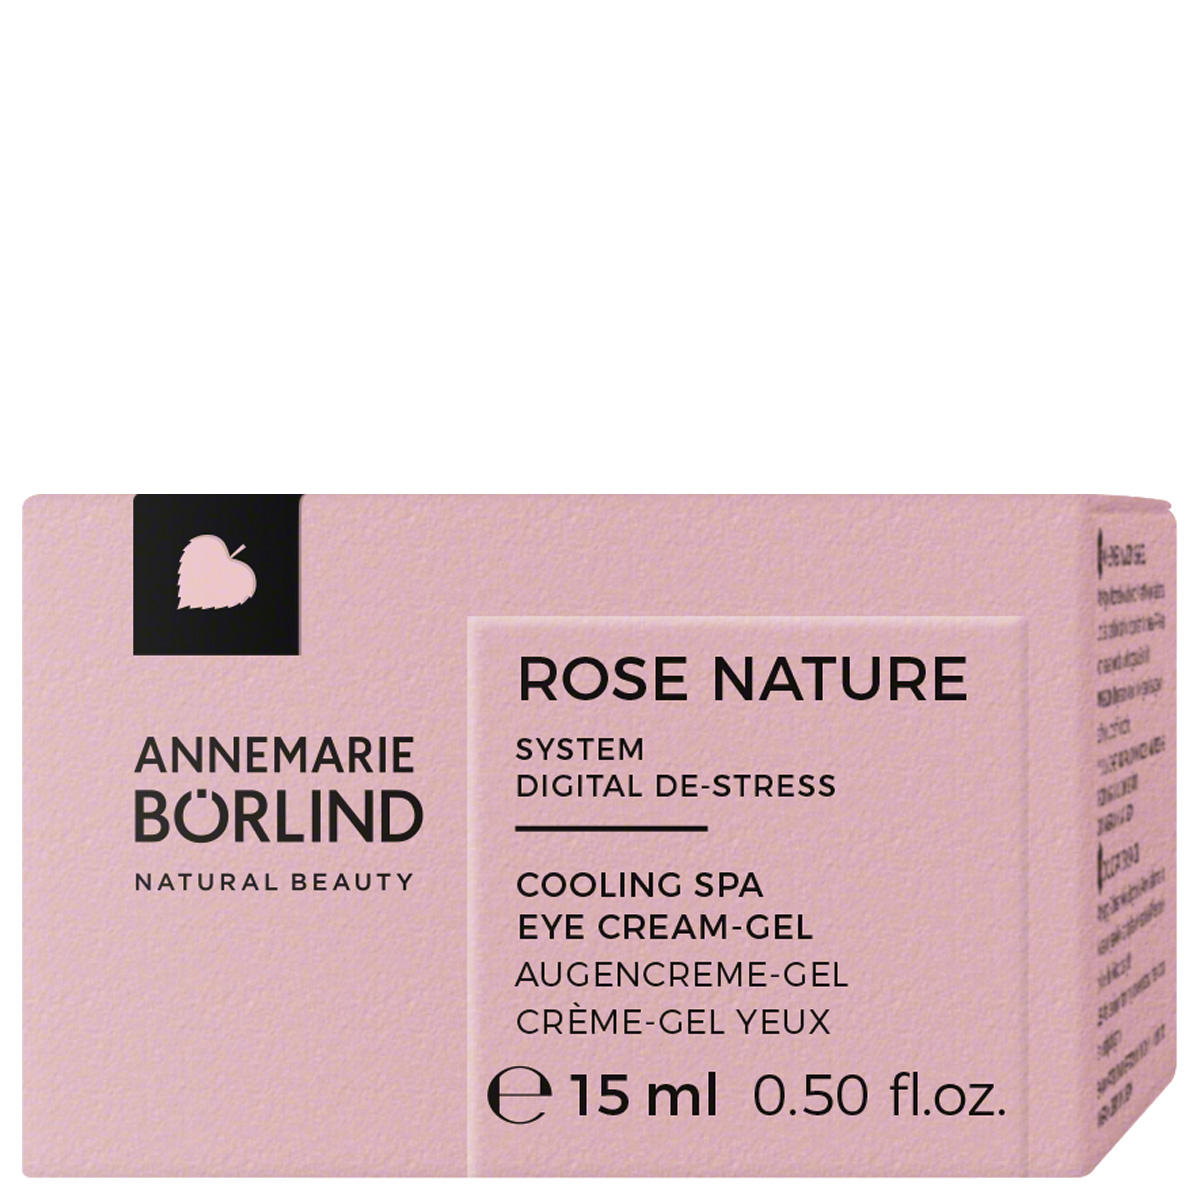 ANNEMARIE BÖRLIND ROSE NATURE Cooling SPA Eye Cream Gel 15 ml - 2